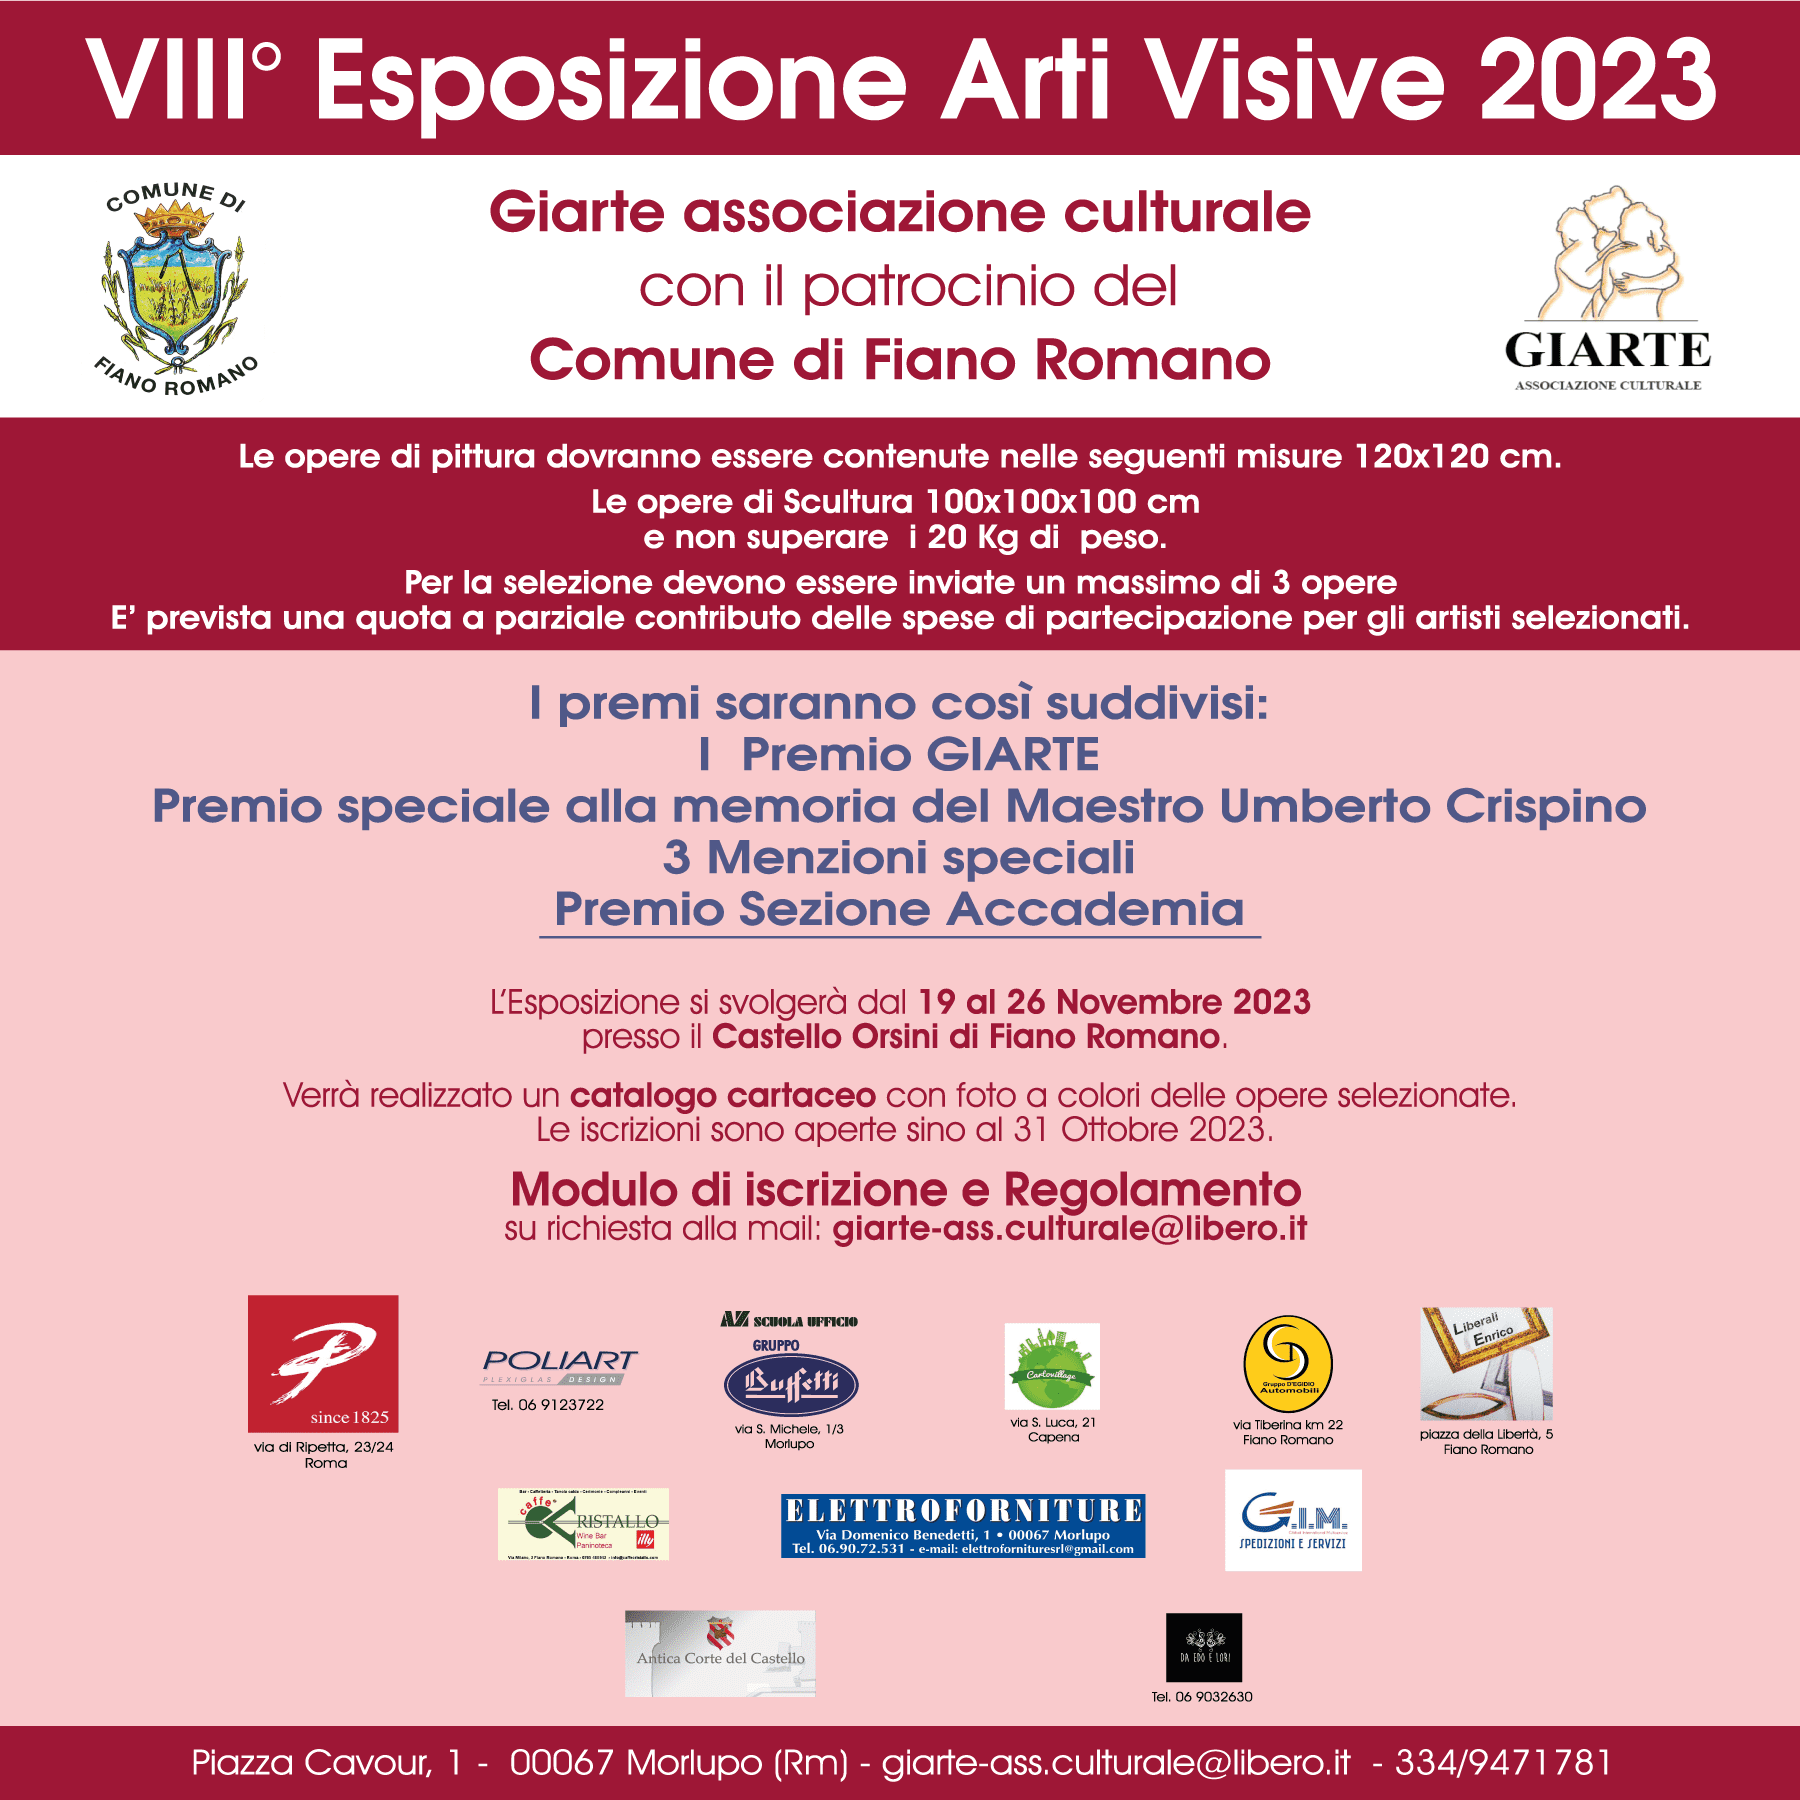 VIII° edizione - Esposizione Arti Visive 2023 - Comune di Fiano Romano - colore scelto il magenta - Scadenza 31 ottobre 2023